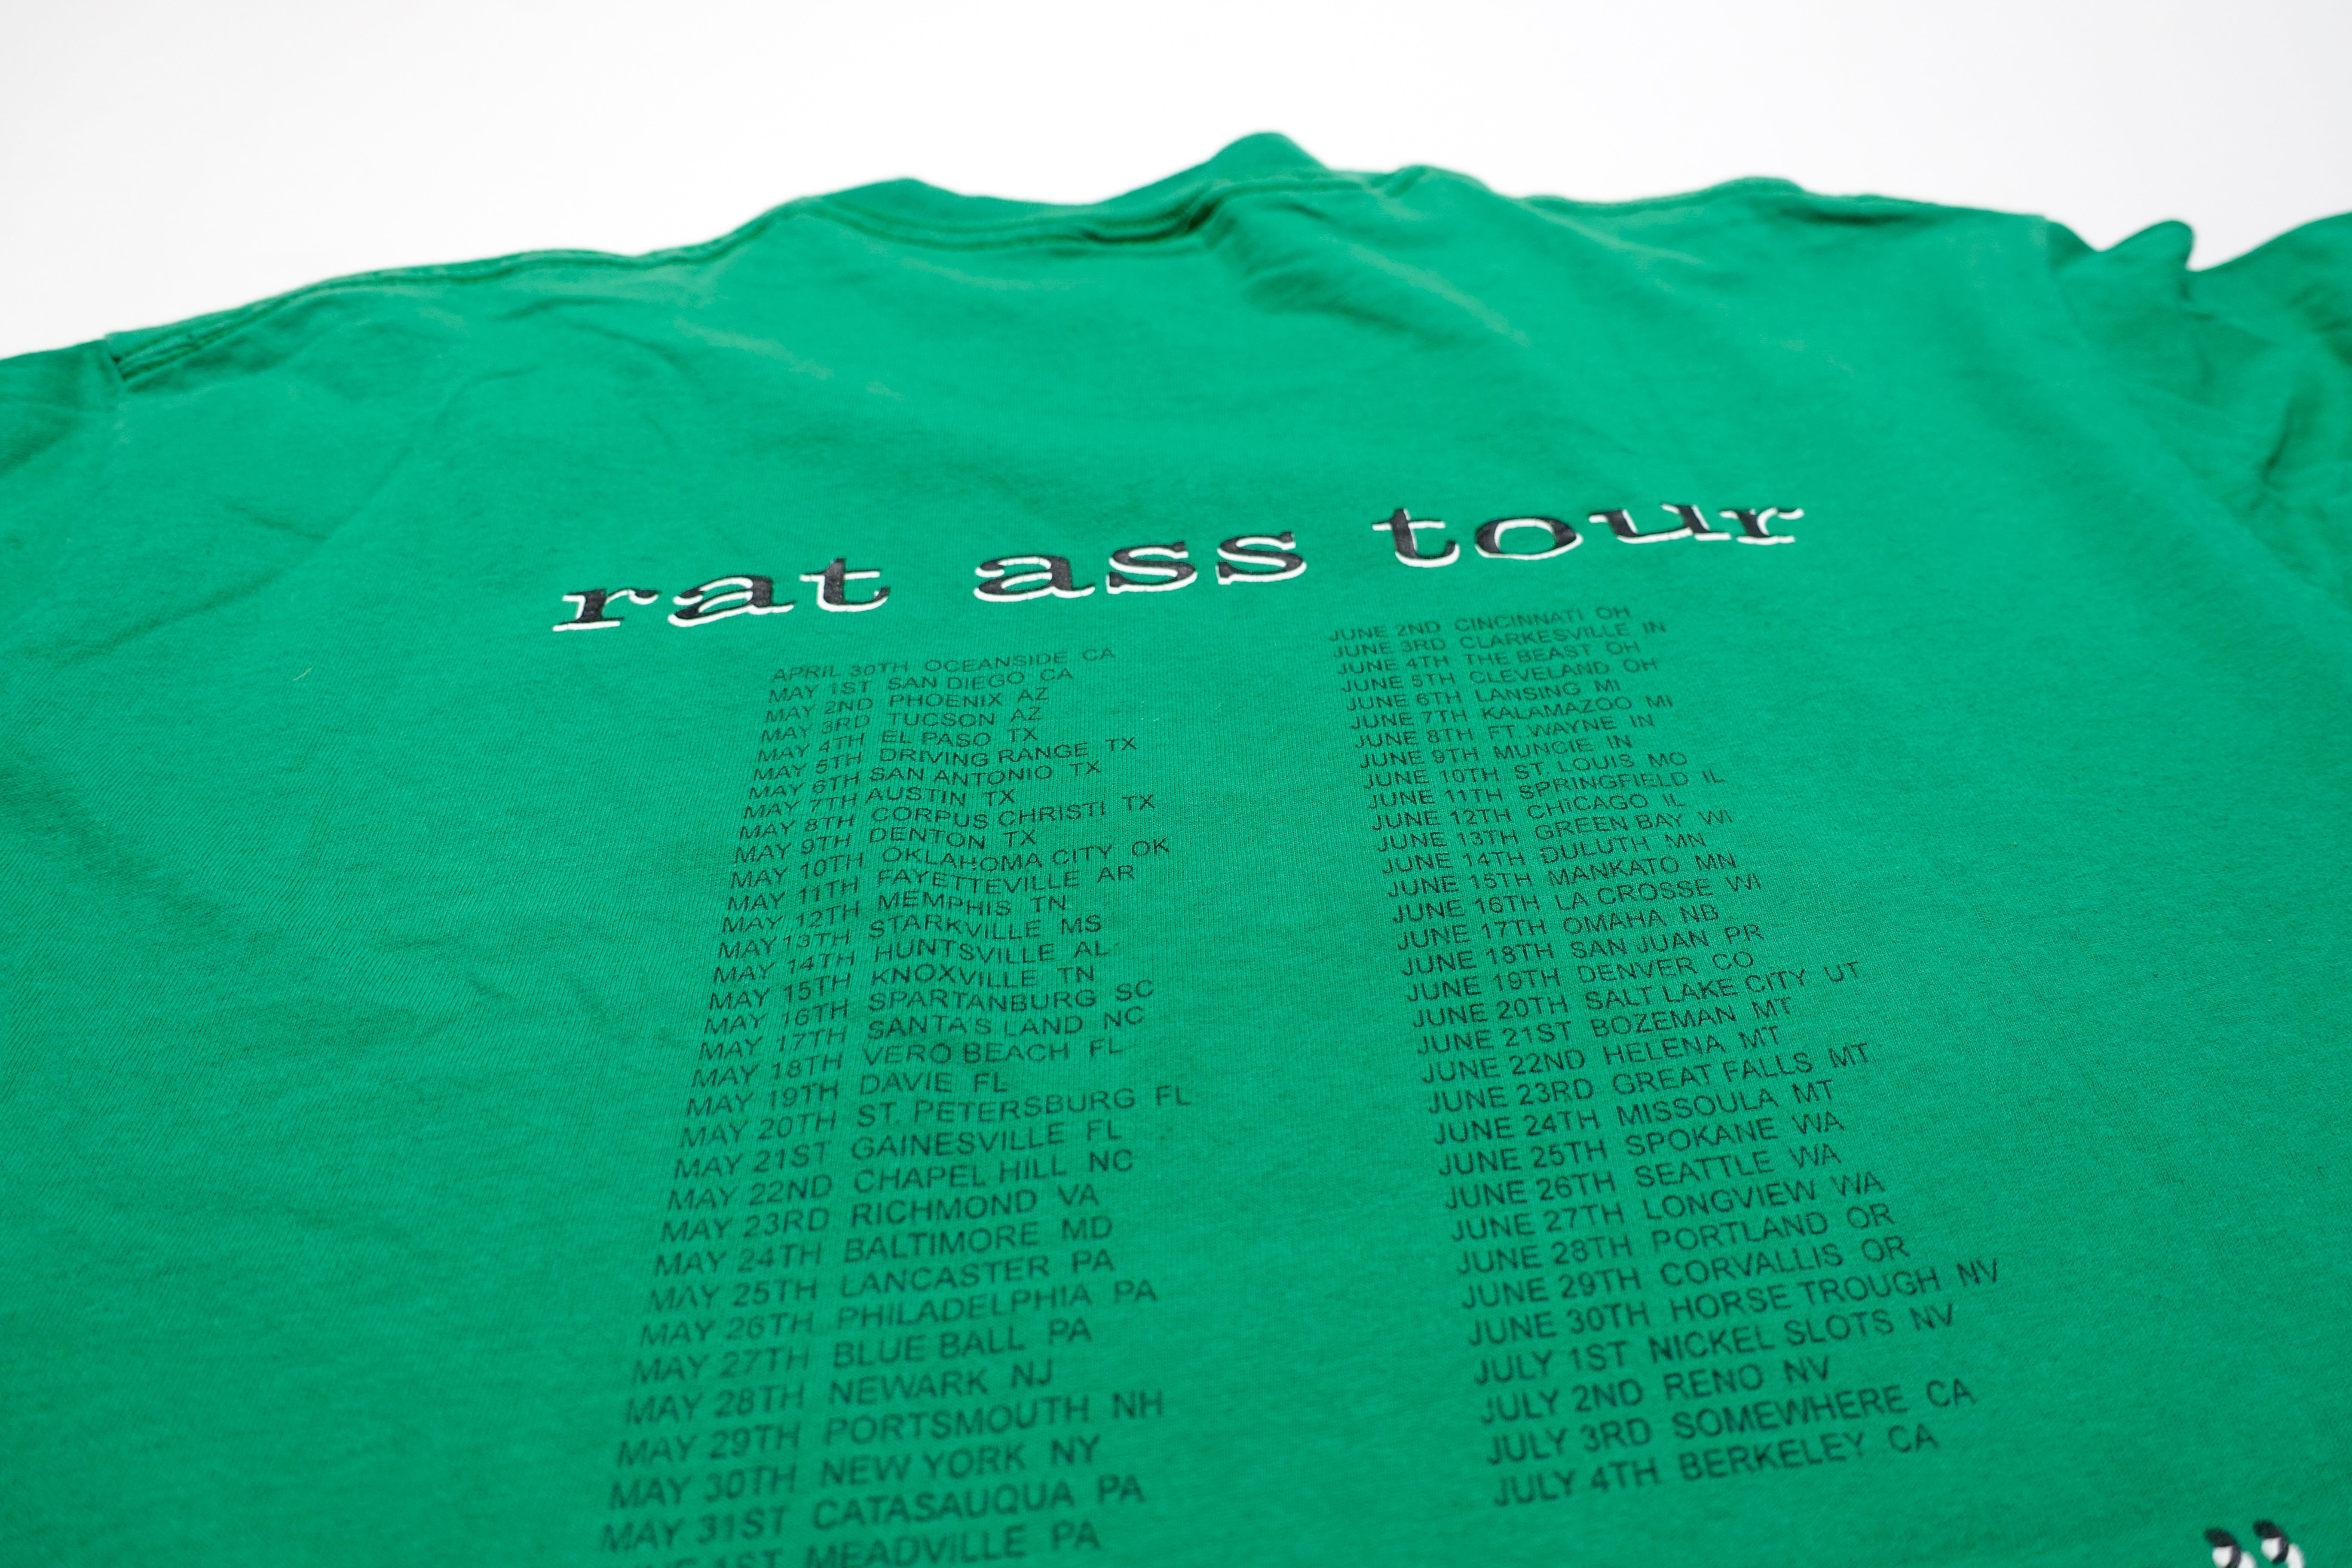 Parasites - It's The Cheese Rat Ass 1998 Tour Shirt Size Large